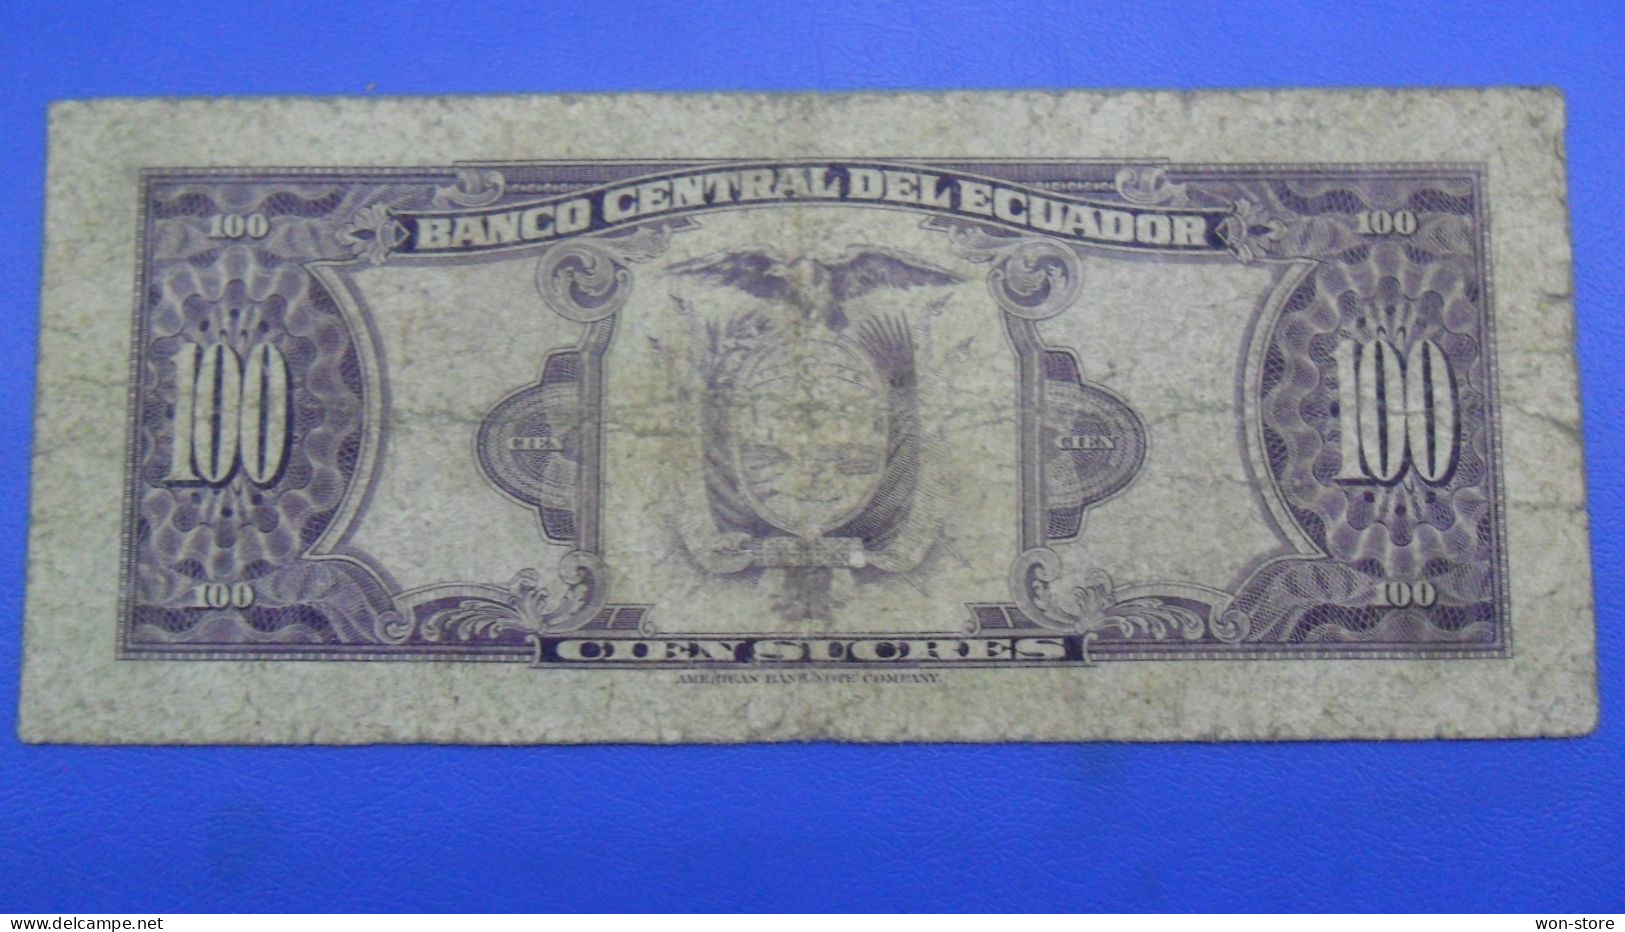 6115 - Ecuador 100 Sucres 1980 - Equateur